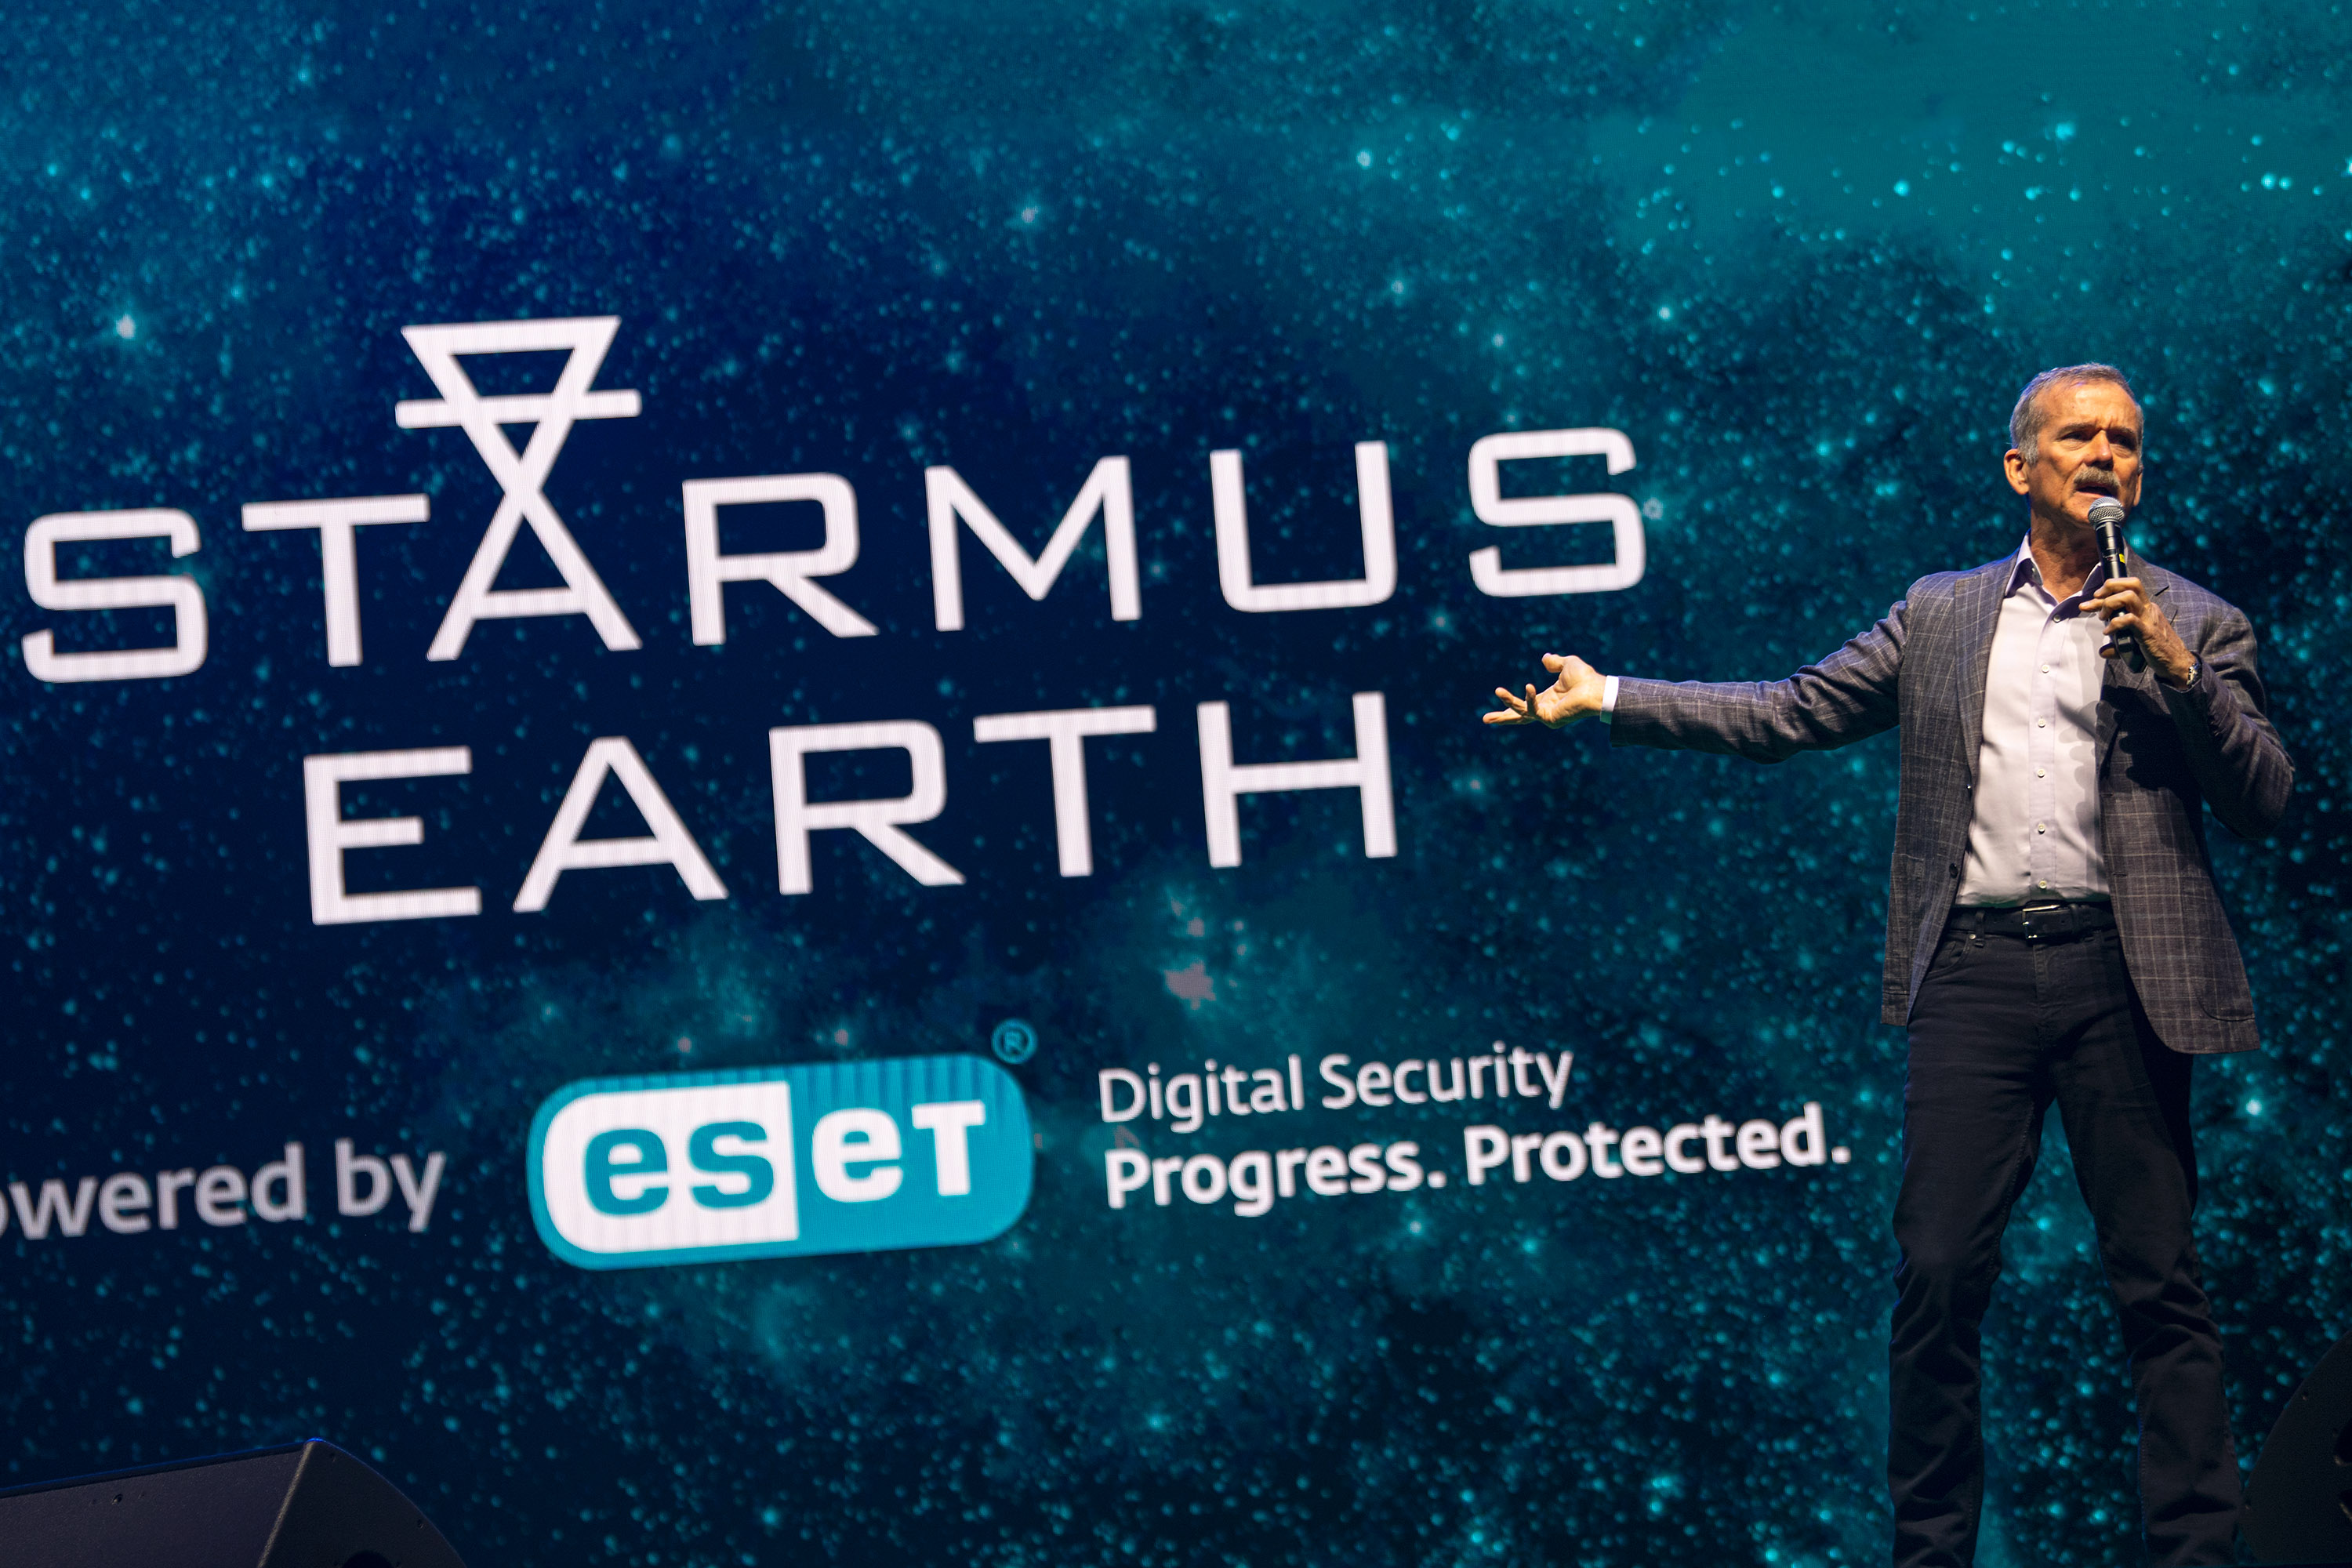 Un hombre está de pie sosteniendo un micrófono en una mano frente a una gran pantalla con las palabras Starmus Earth escritas en letras grandes.